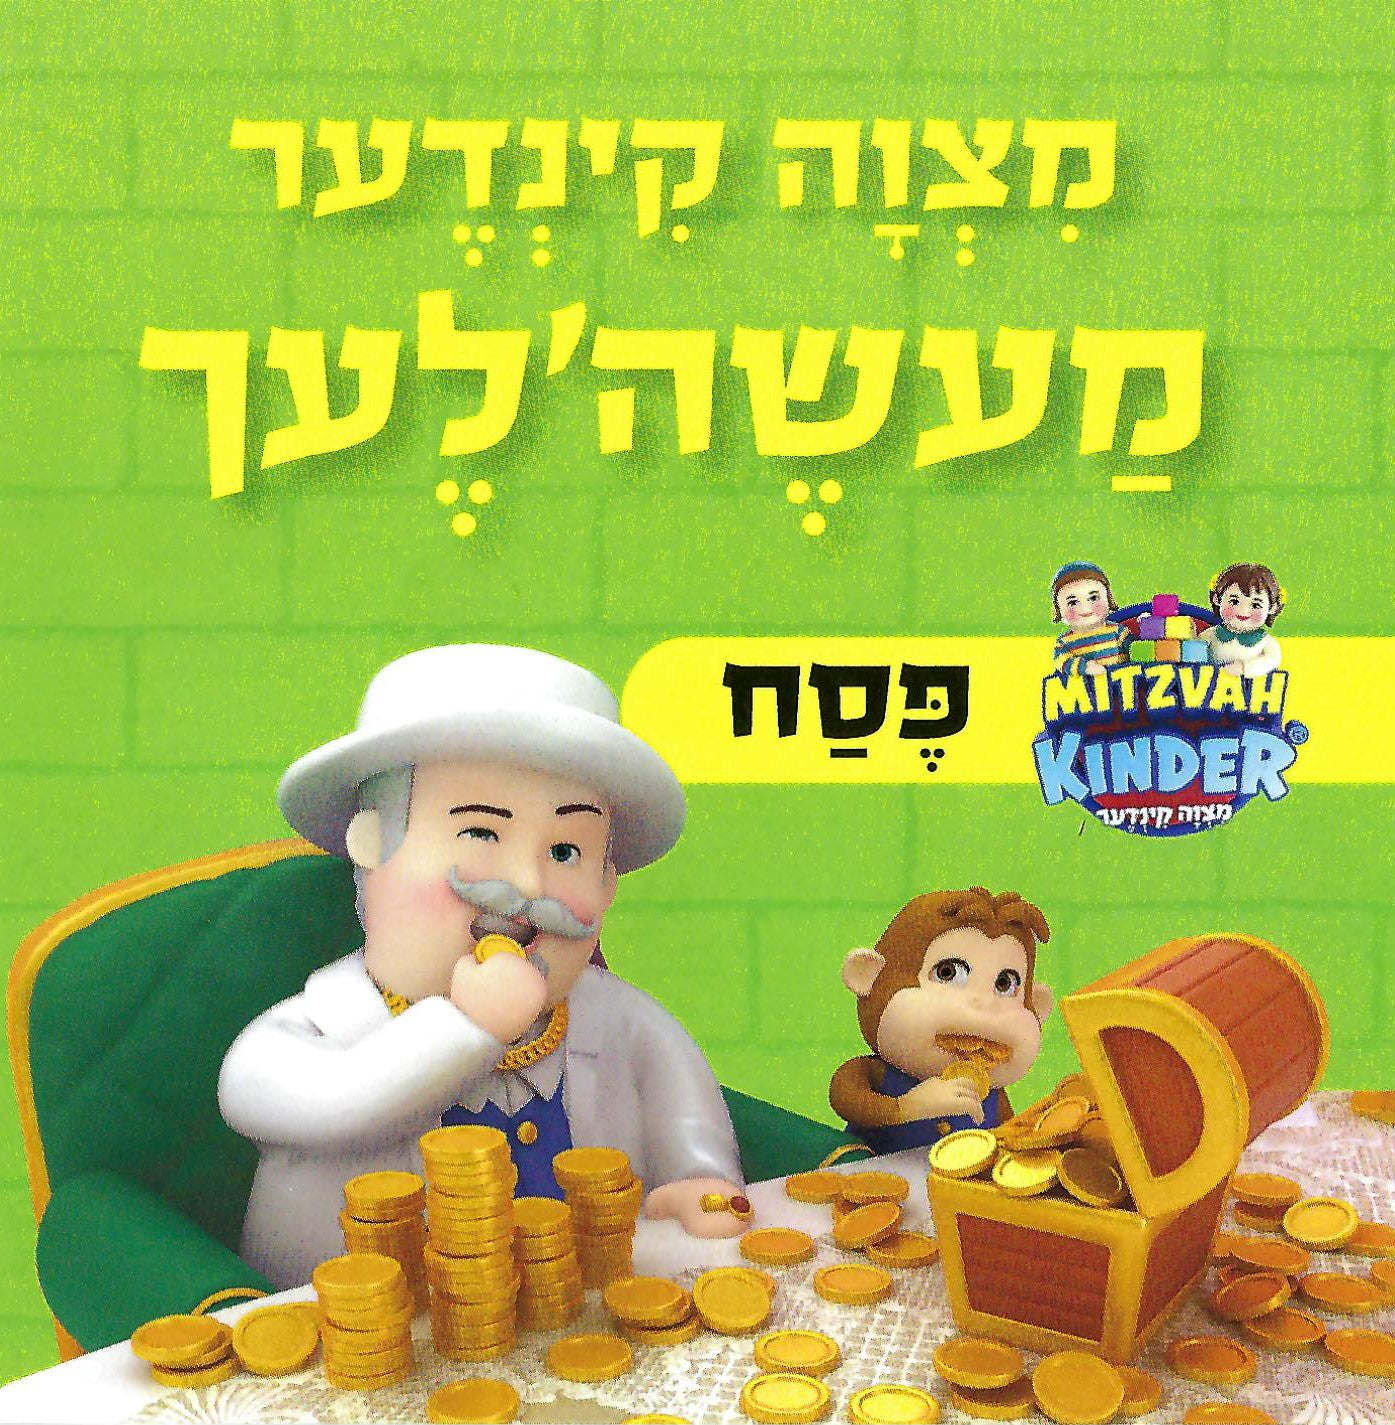 Mitzvah Kinder - Pesach